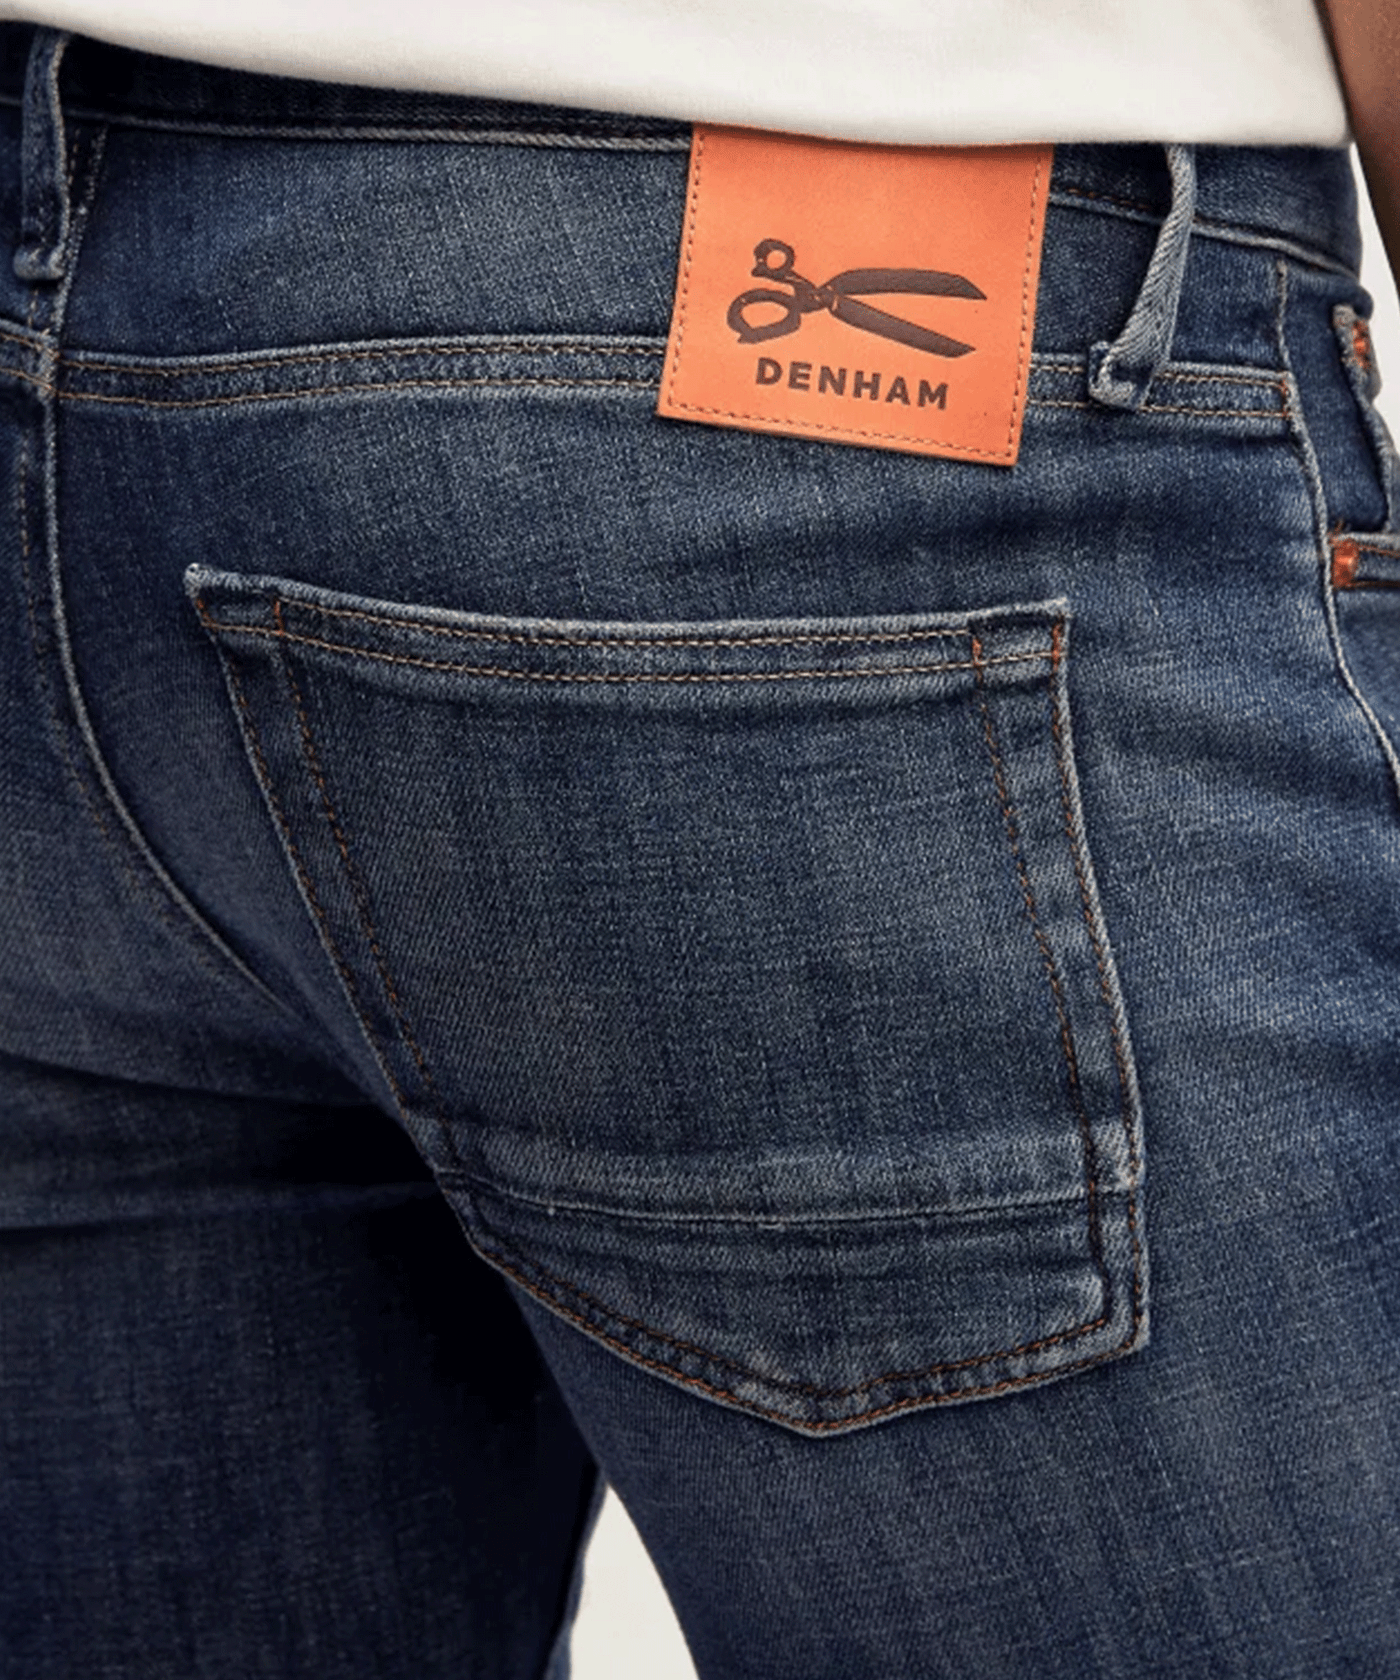 Denham - Razor - Jeans - Authentic Dark Worn